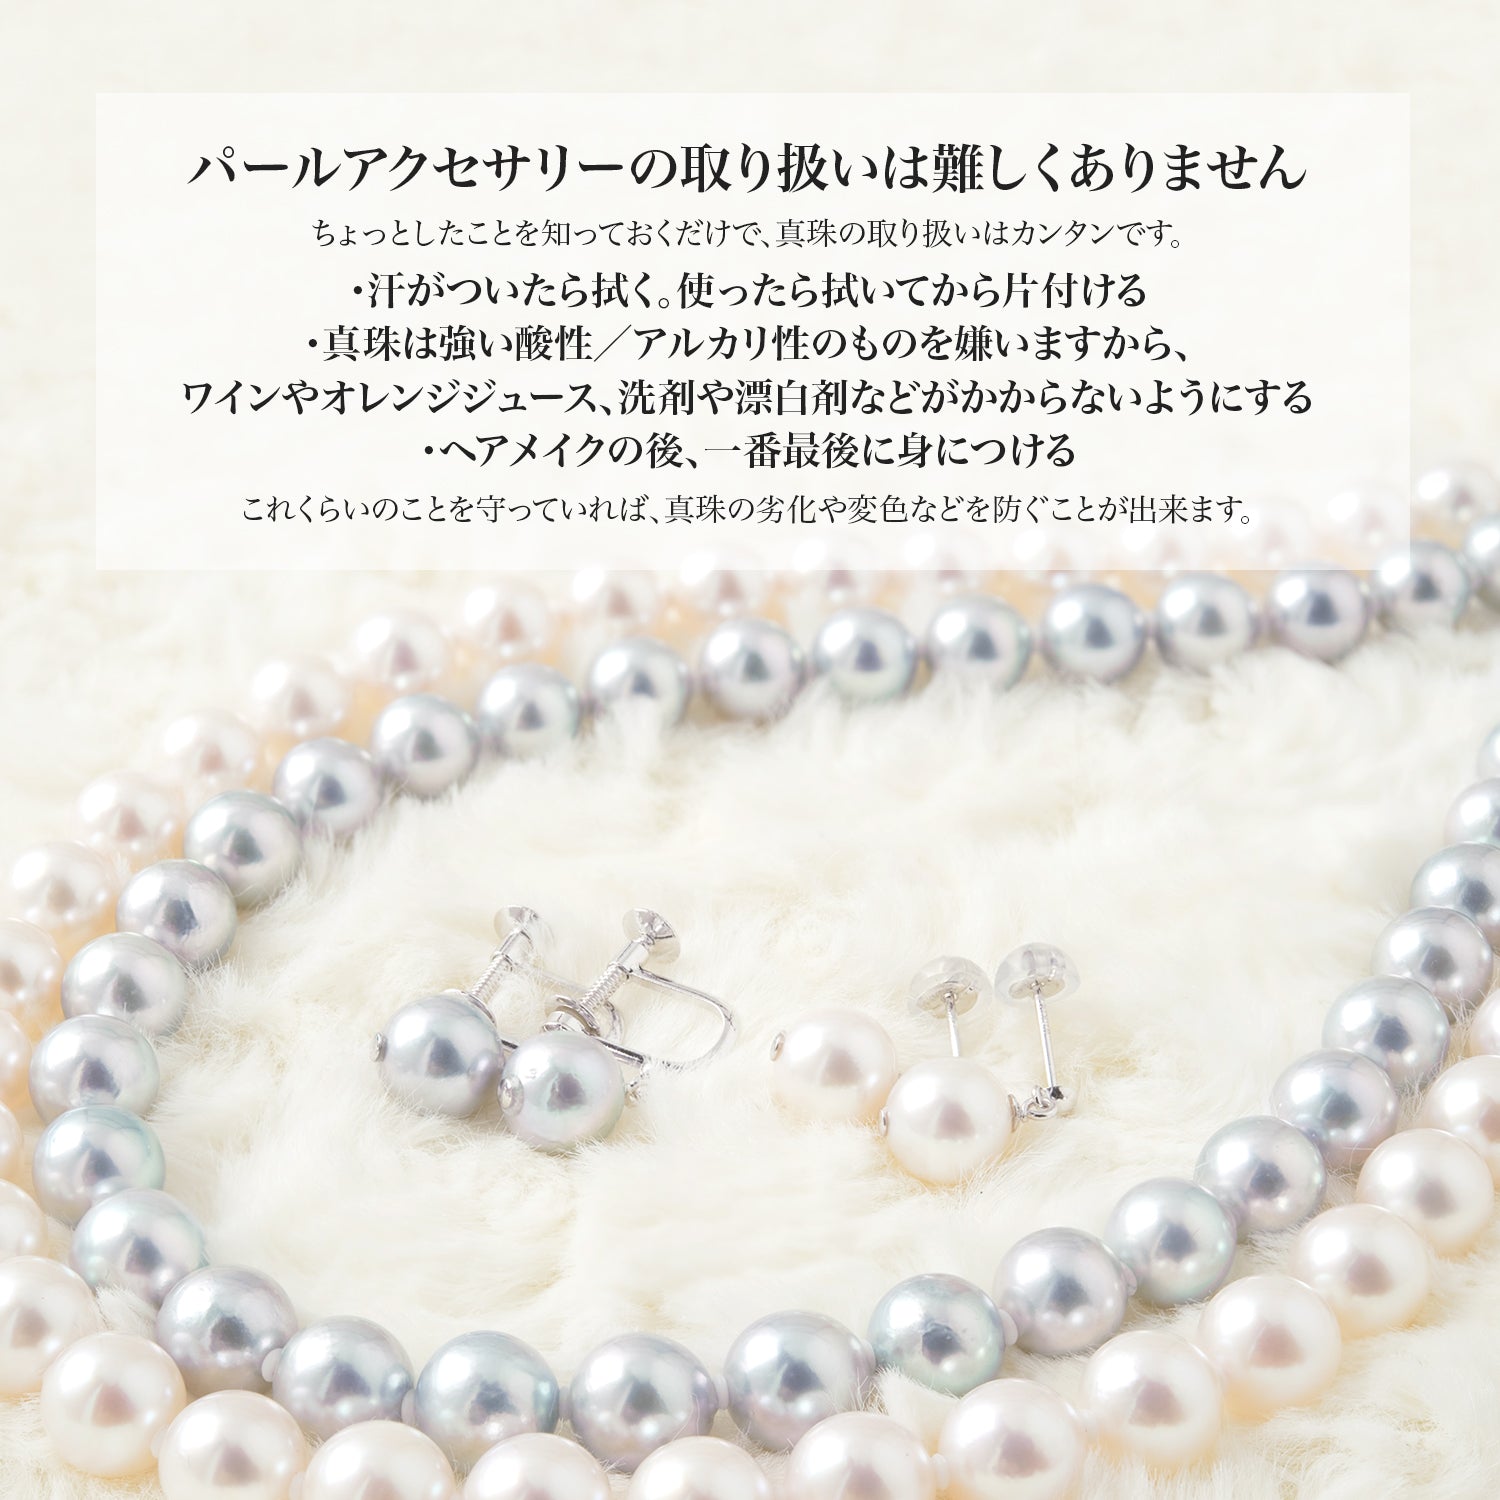 【灰色】单颗 Akoya 珍珠珍珠项链 [8.0-8.5mm] SV925 白金饰面威尼斯链 (3811)